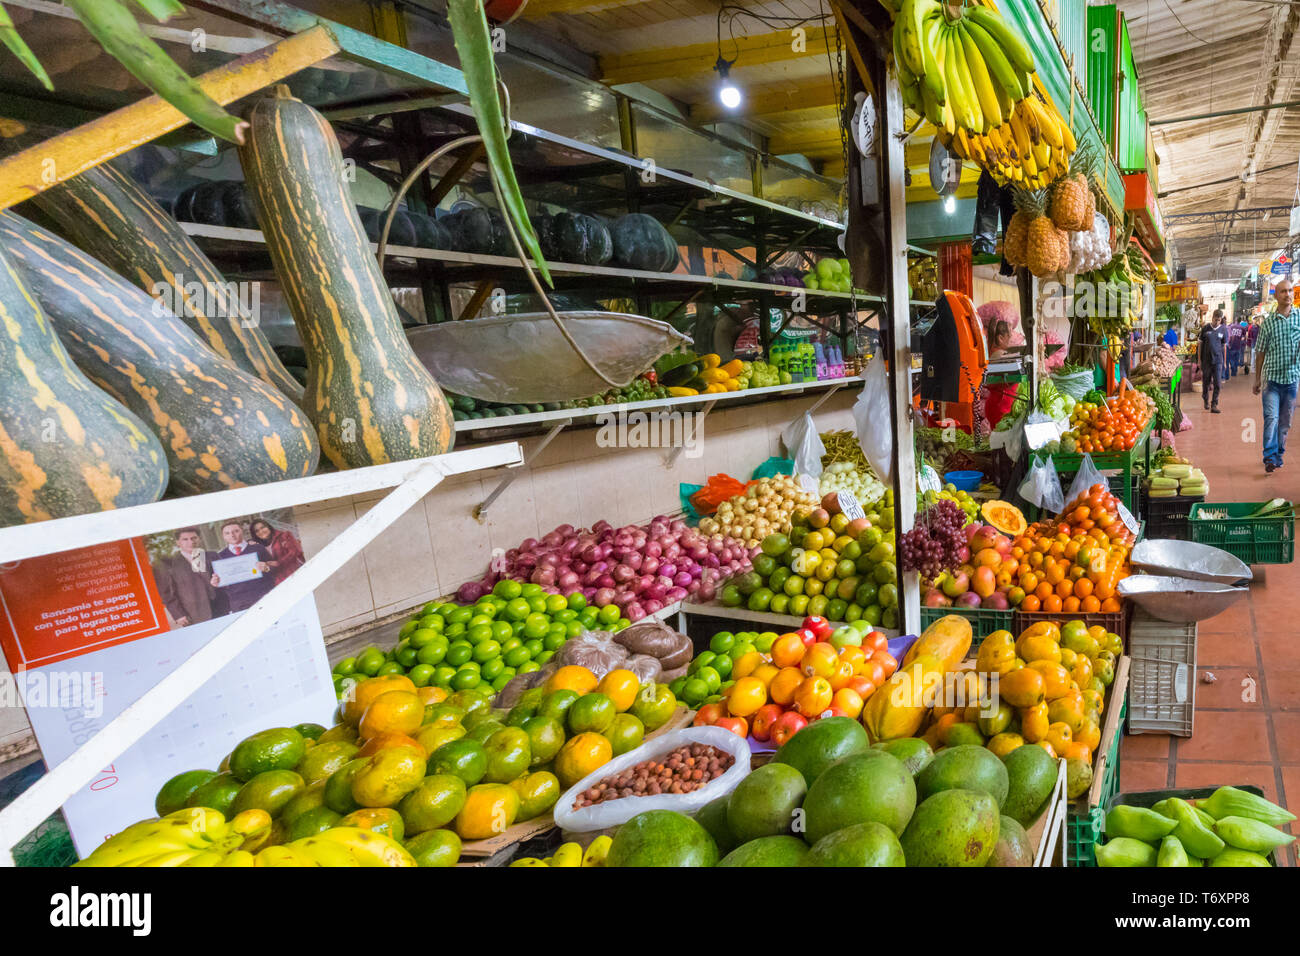 Las hortalizas y frutas tropicales en el mercado minorista de Medellin, Colombia Foto de stock